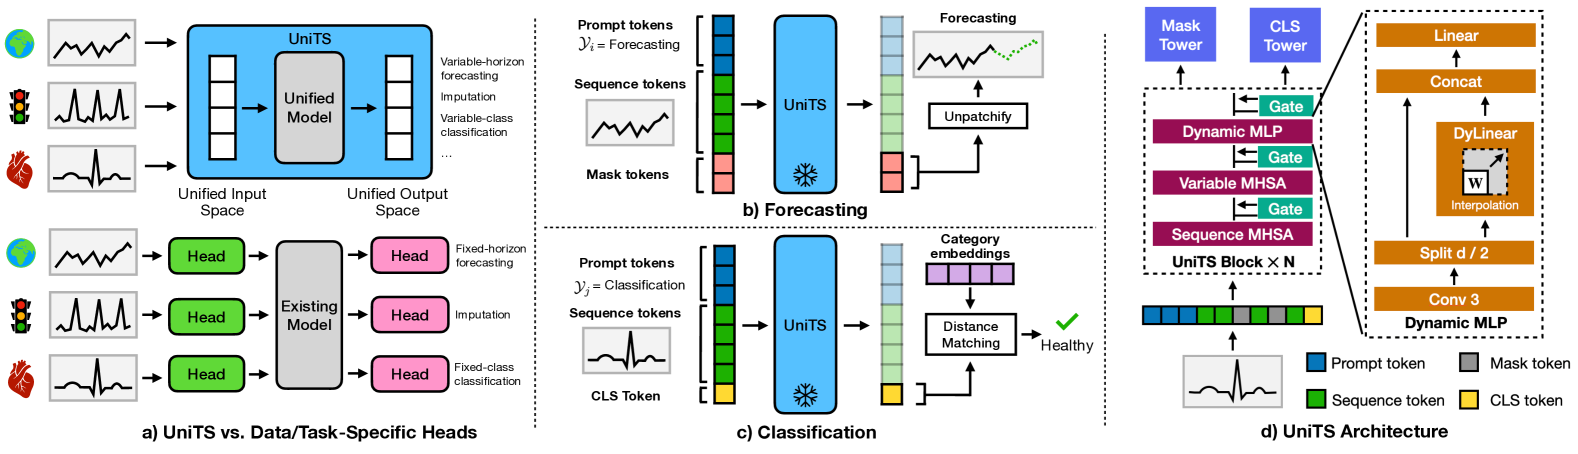 (a)将 UniTS 模型与现有模型进行比较；(b)预测(c)分类(d) UniTS 模型的体系结构